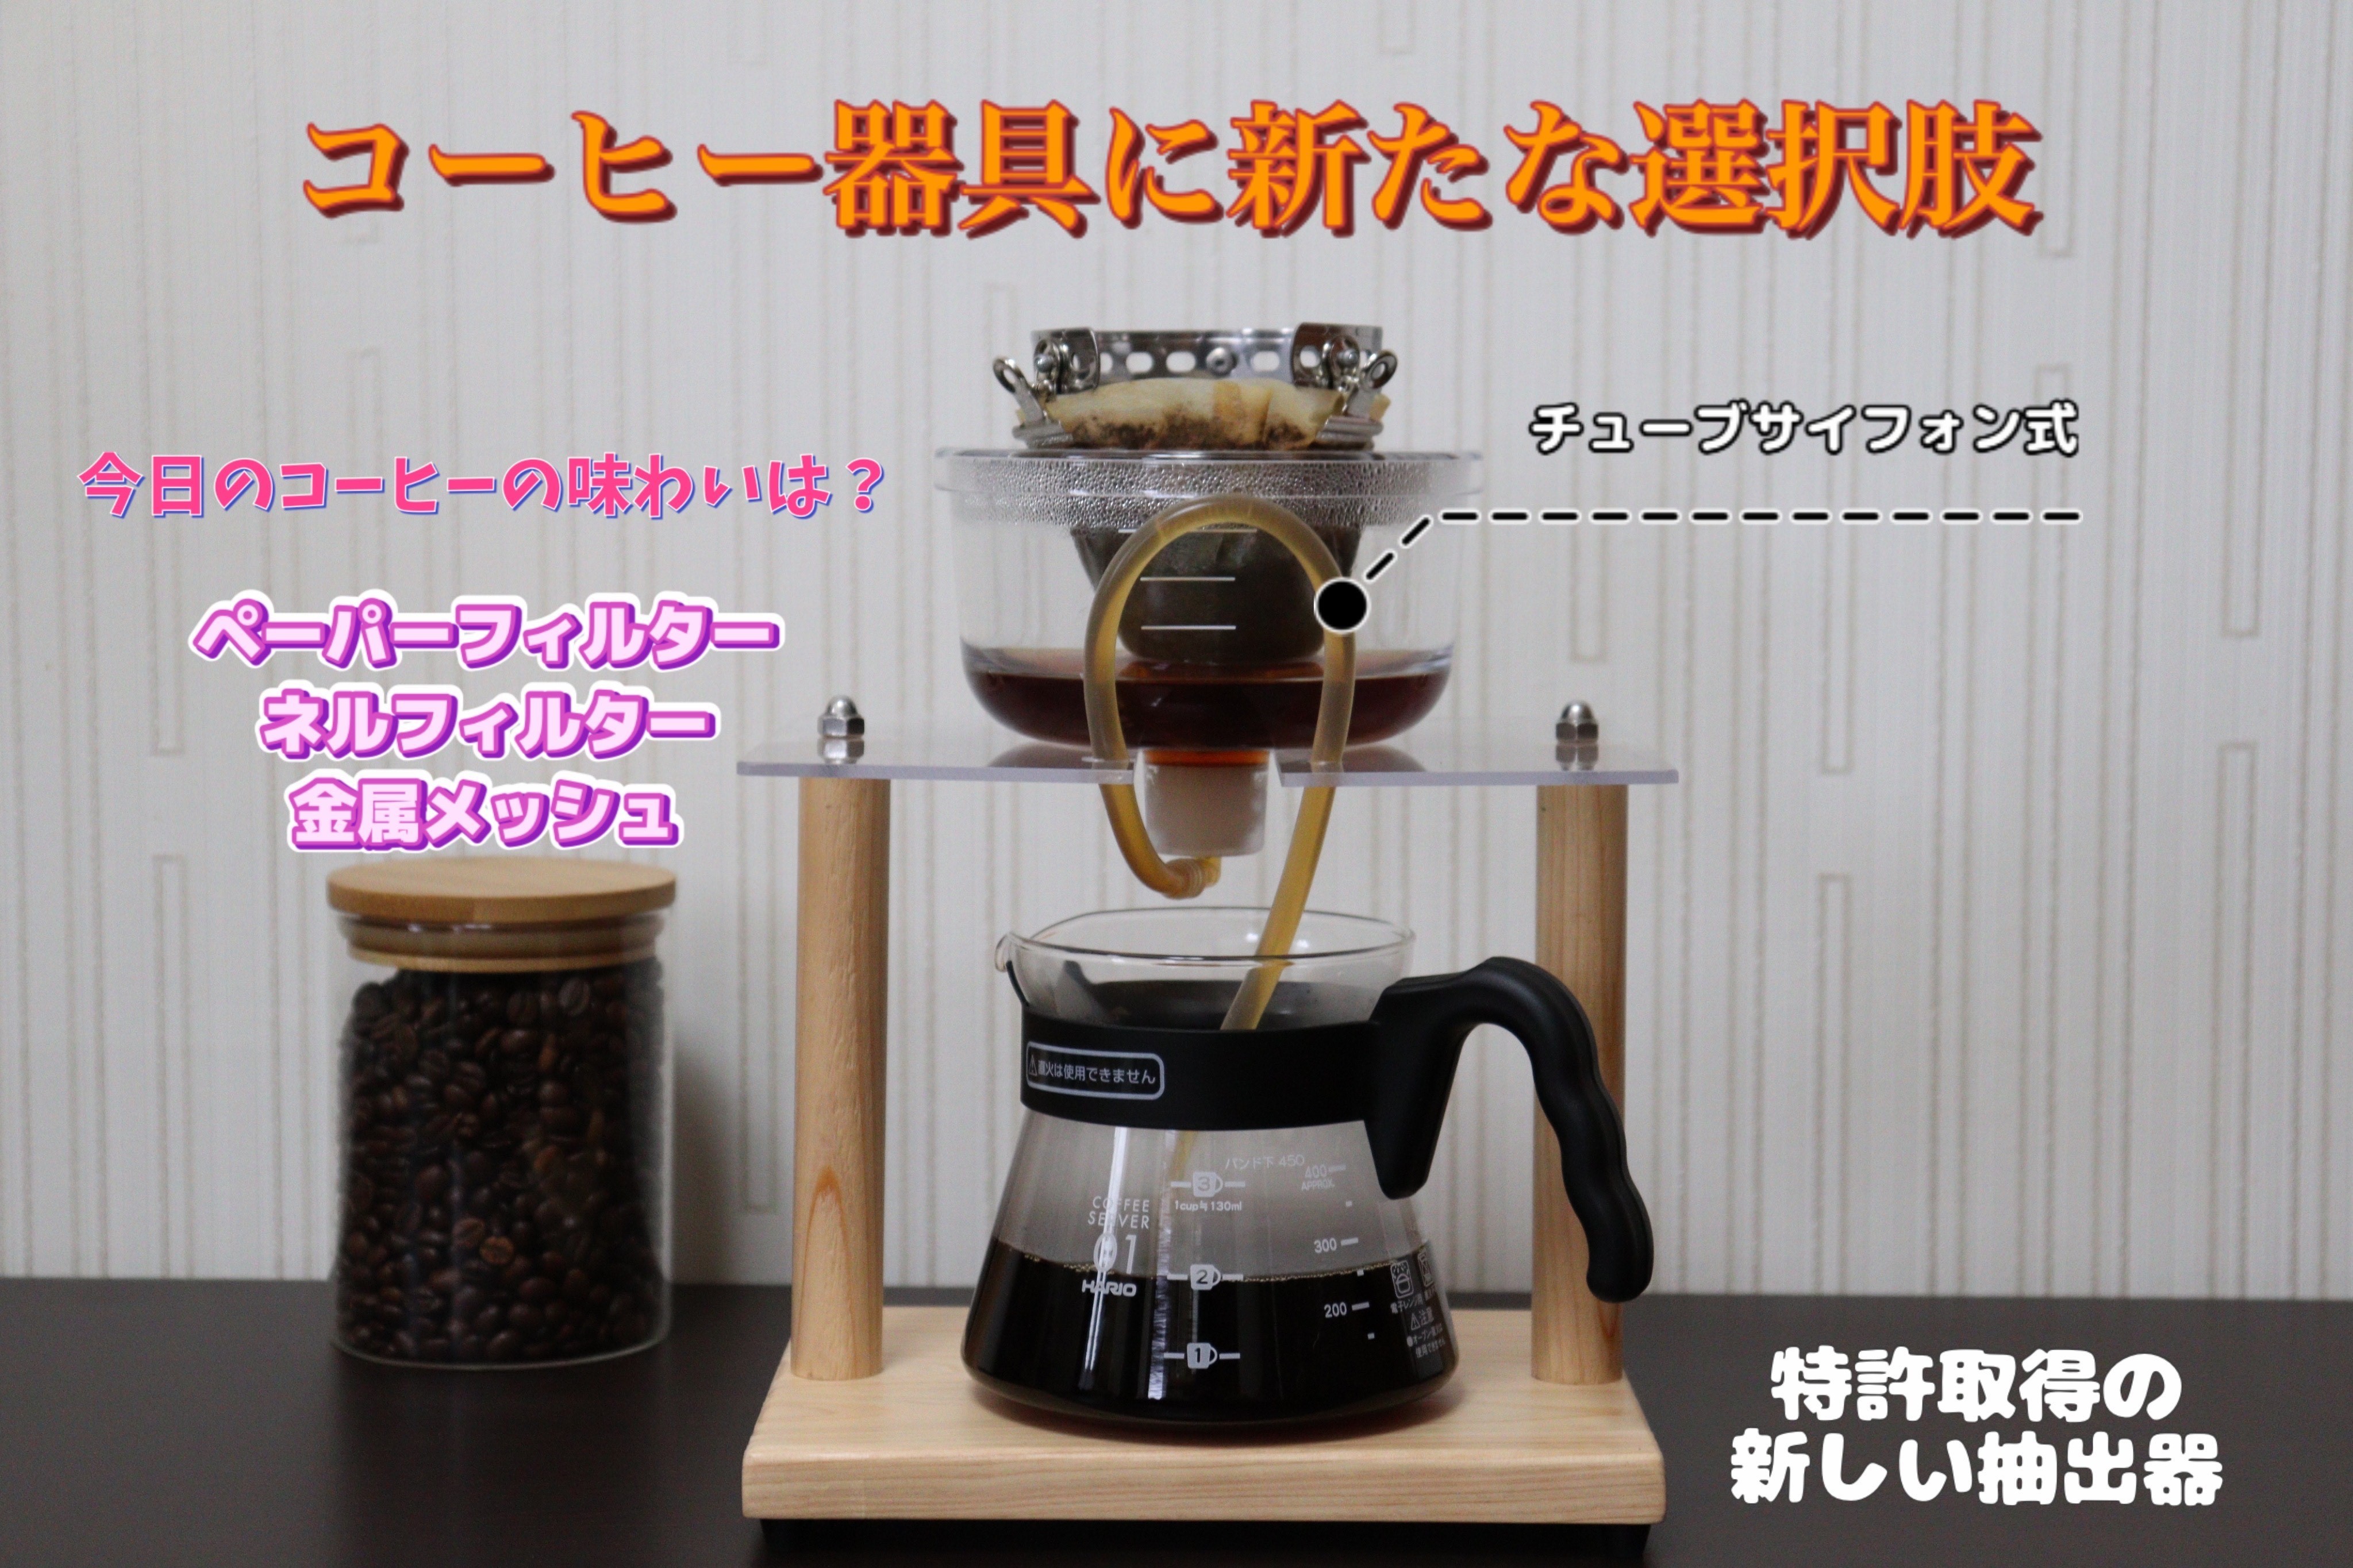 コーヒー・紅茶・日本茶、これ一台でおいしく淹れる
「チューブサイホン式」抽出器具の
先行予約販売を開始